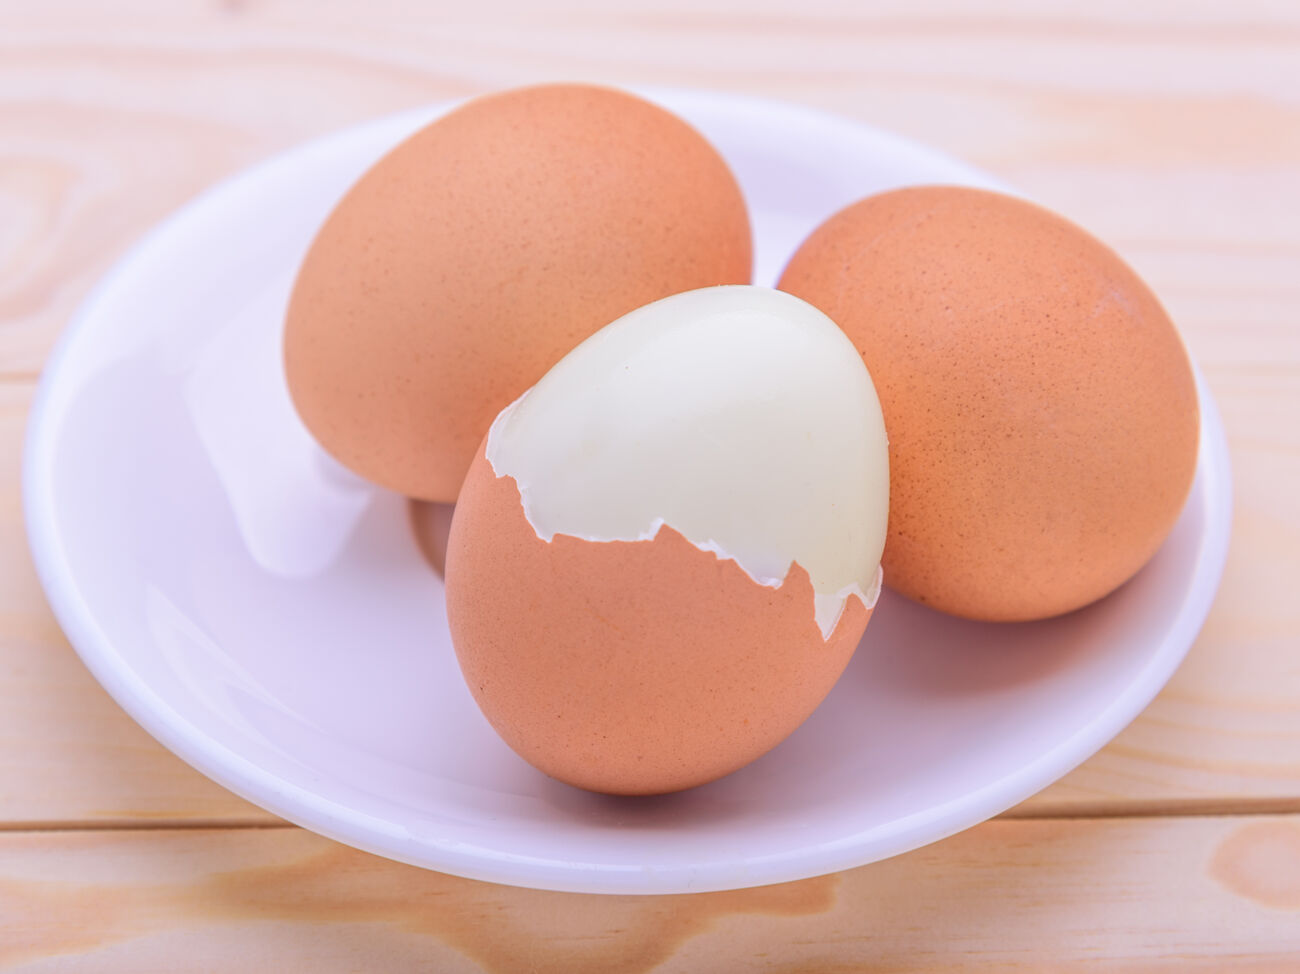 Как эффективно охладить яичный продукт перед обработкой